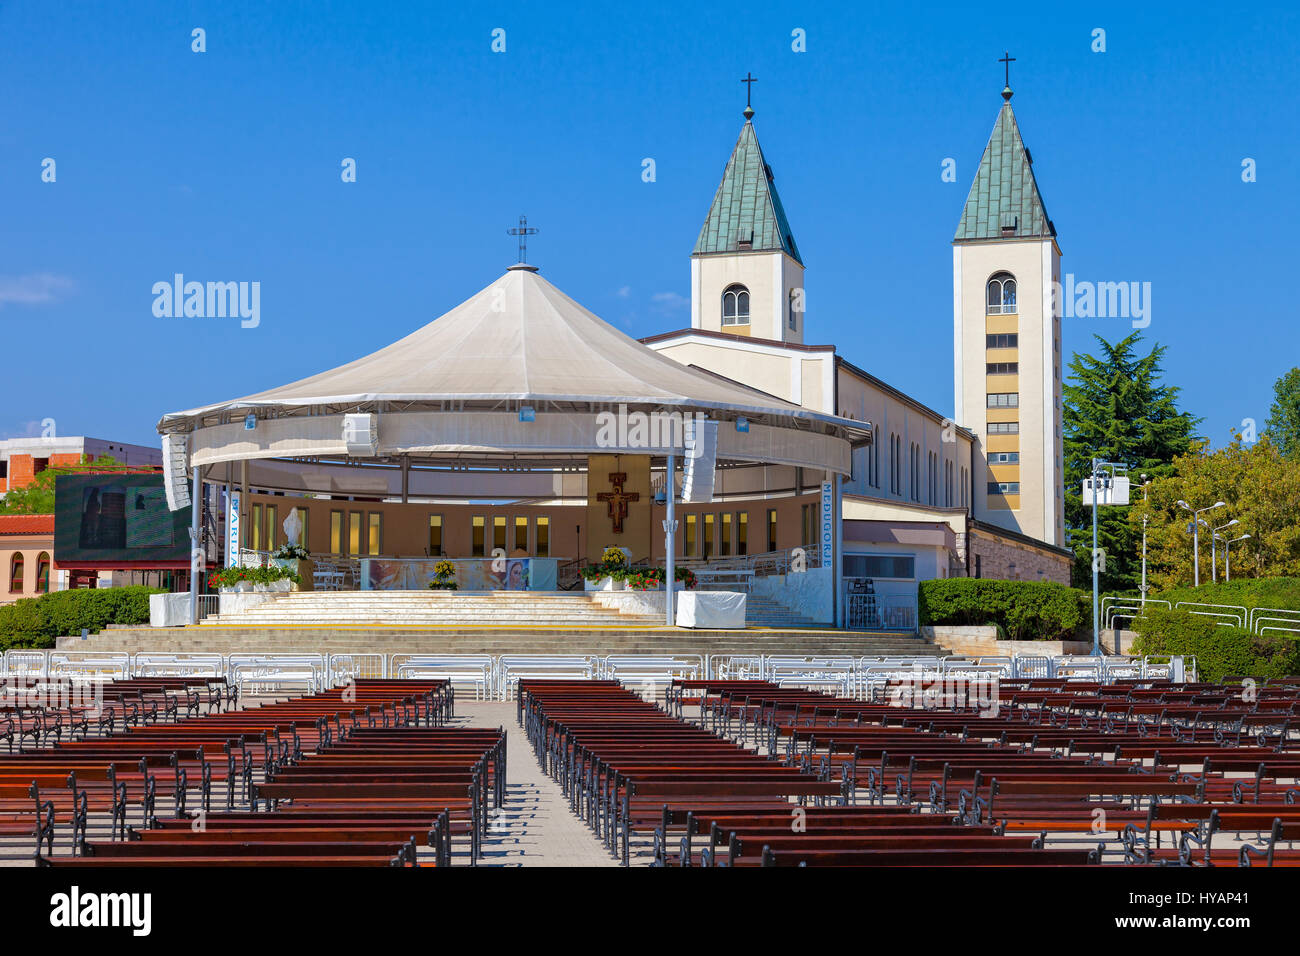 Saint James church of Medjugorje in Bosnia Herzegovina. Stock Photo